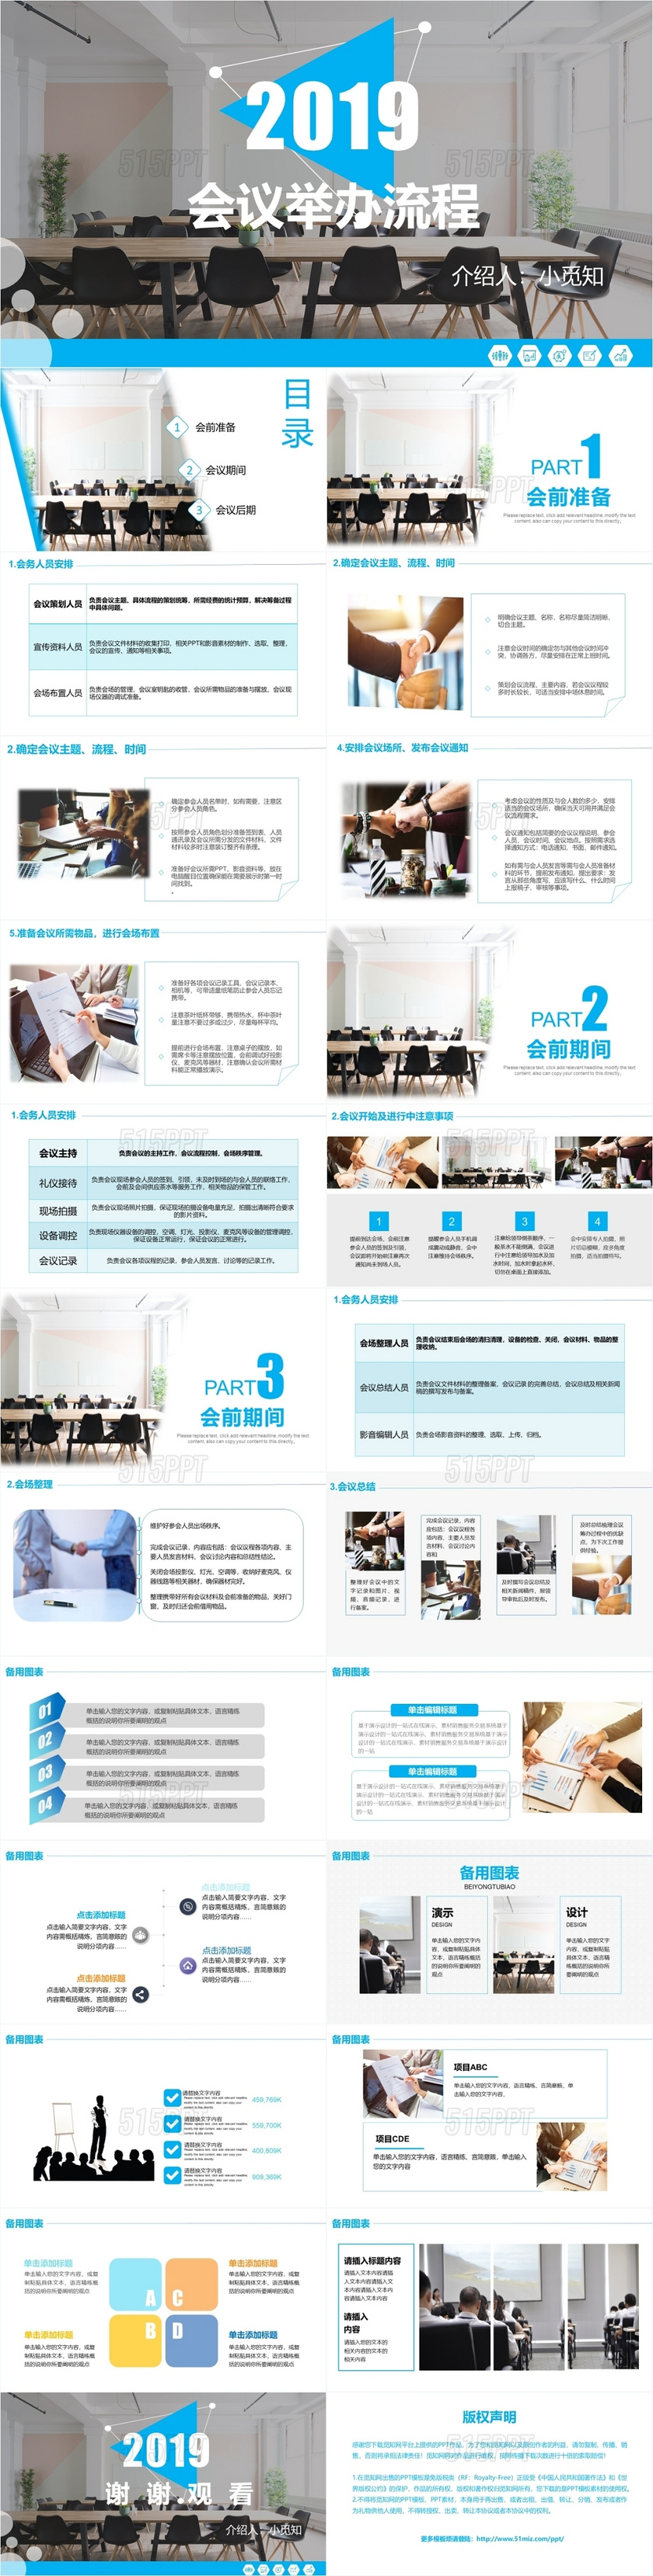 2019经典商务会议举办流程PPT模板